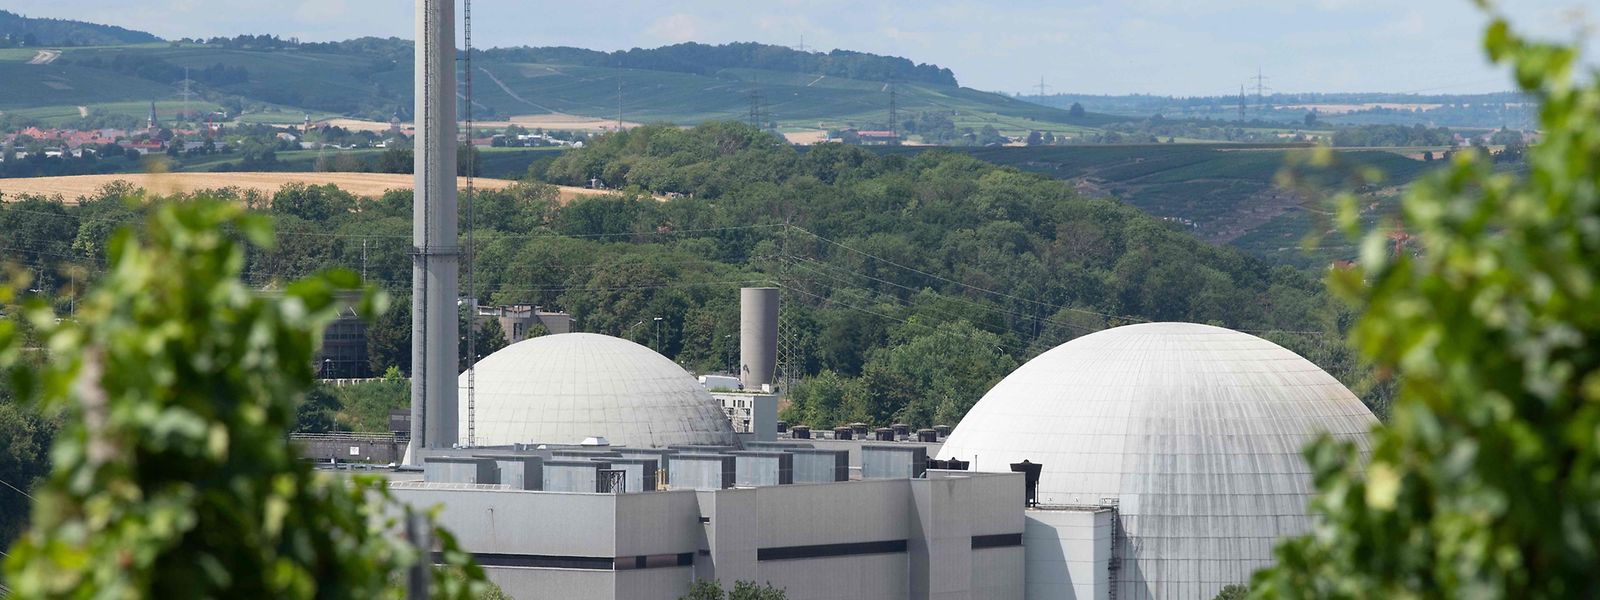 Angesichts der Gaskrise wird in Deutschland gerade darüber diskutiert, das Abschalten der letzten drei Kernkraftwerke im Land um ein Jahr zu verschieben. 

